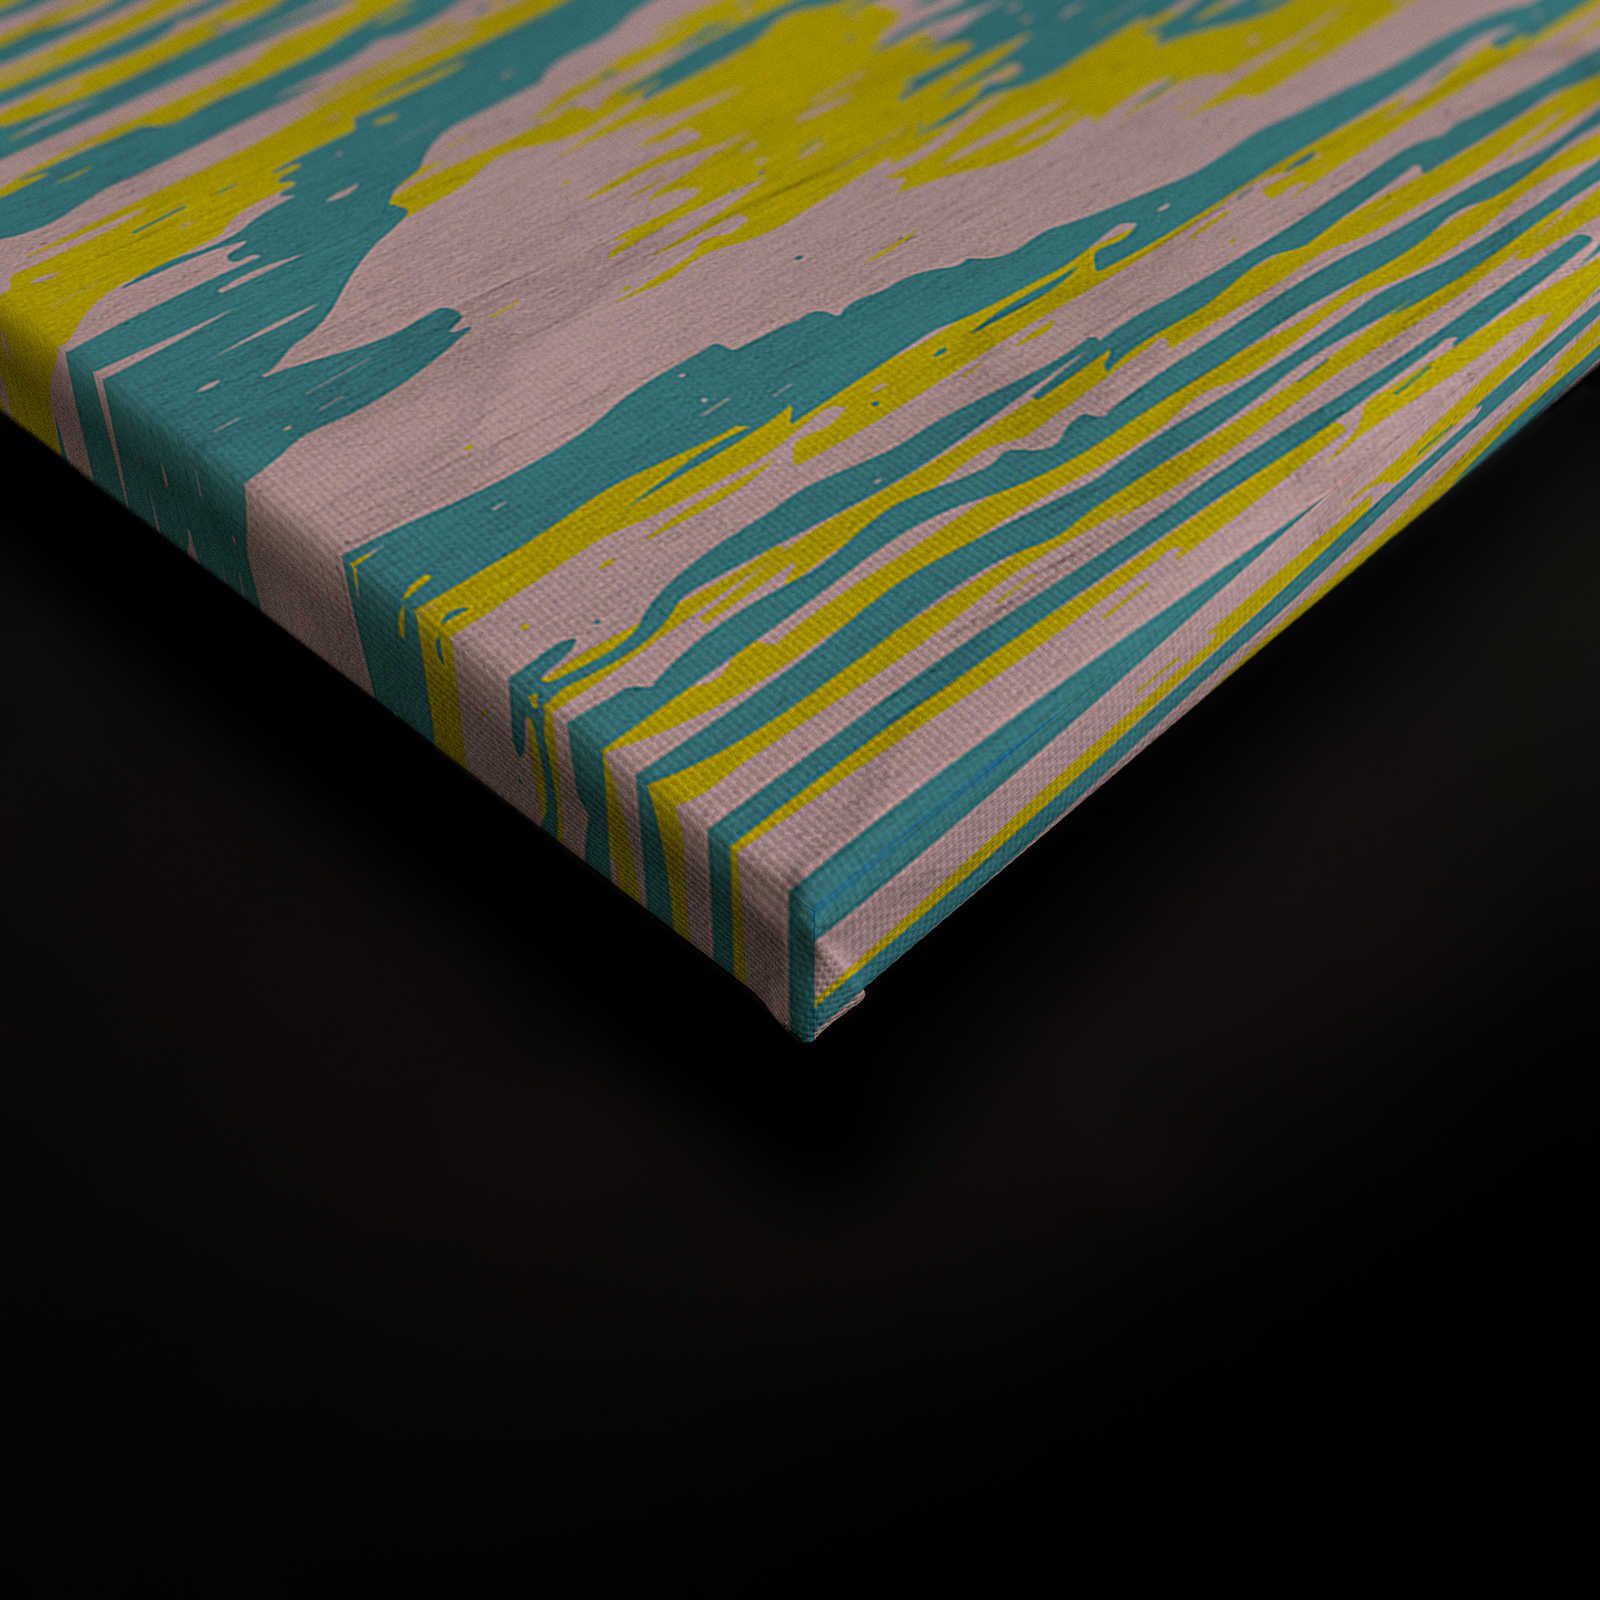             Bounty 3 - Quadro su tela giallo e blu con design effetto legno - 0,90 m x 0,60 m
        